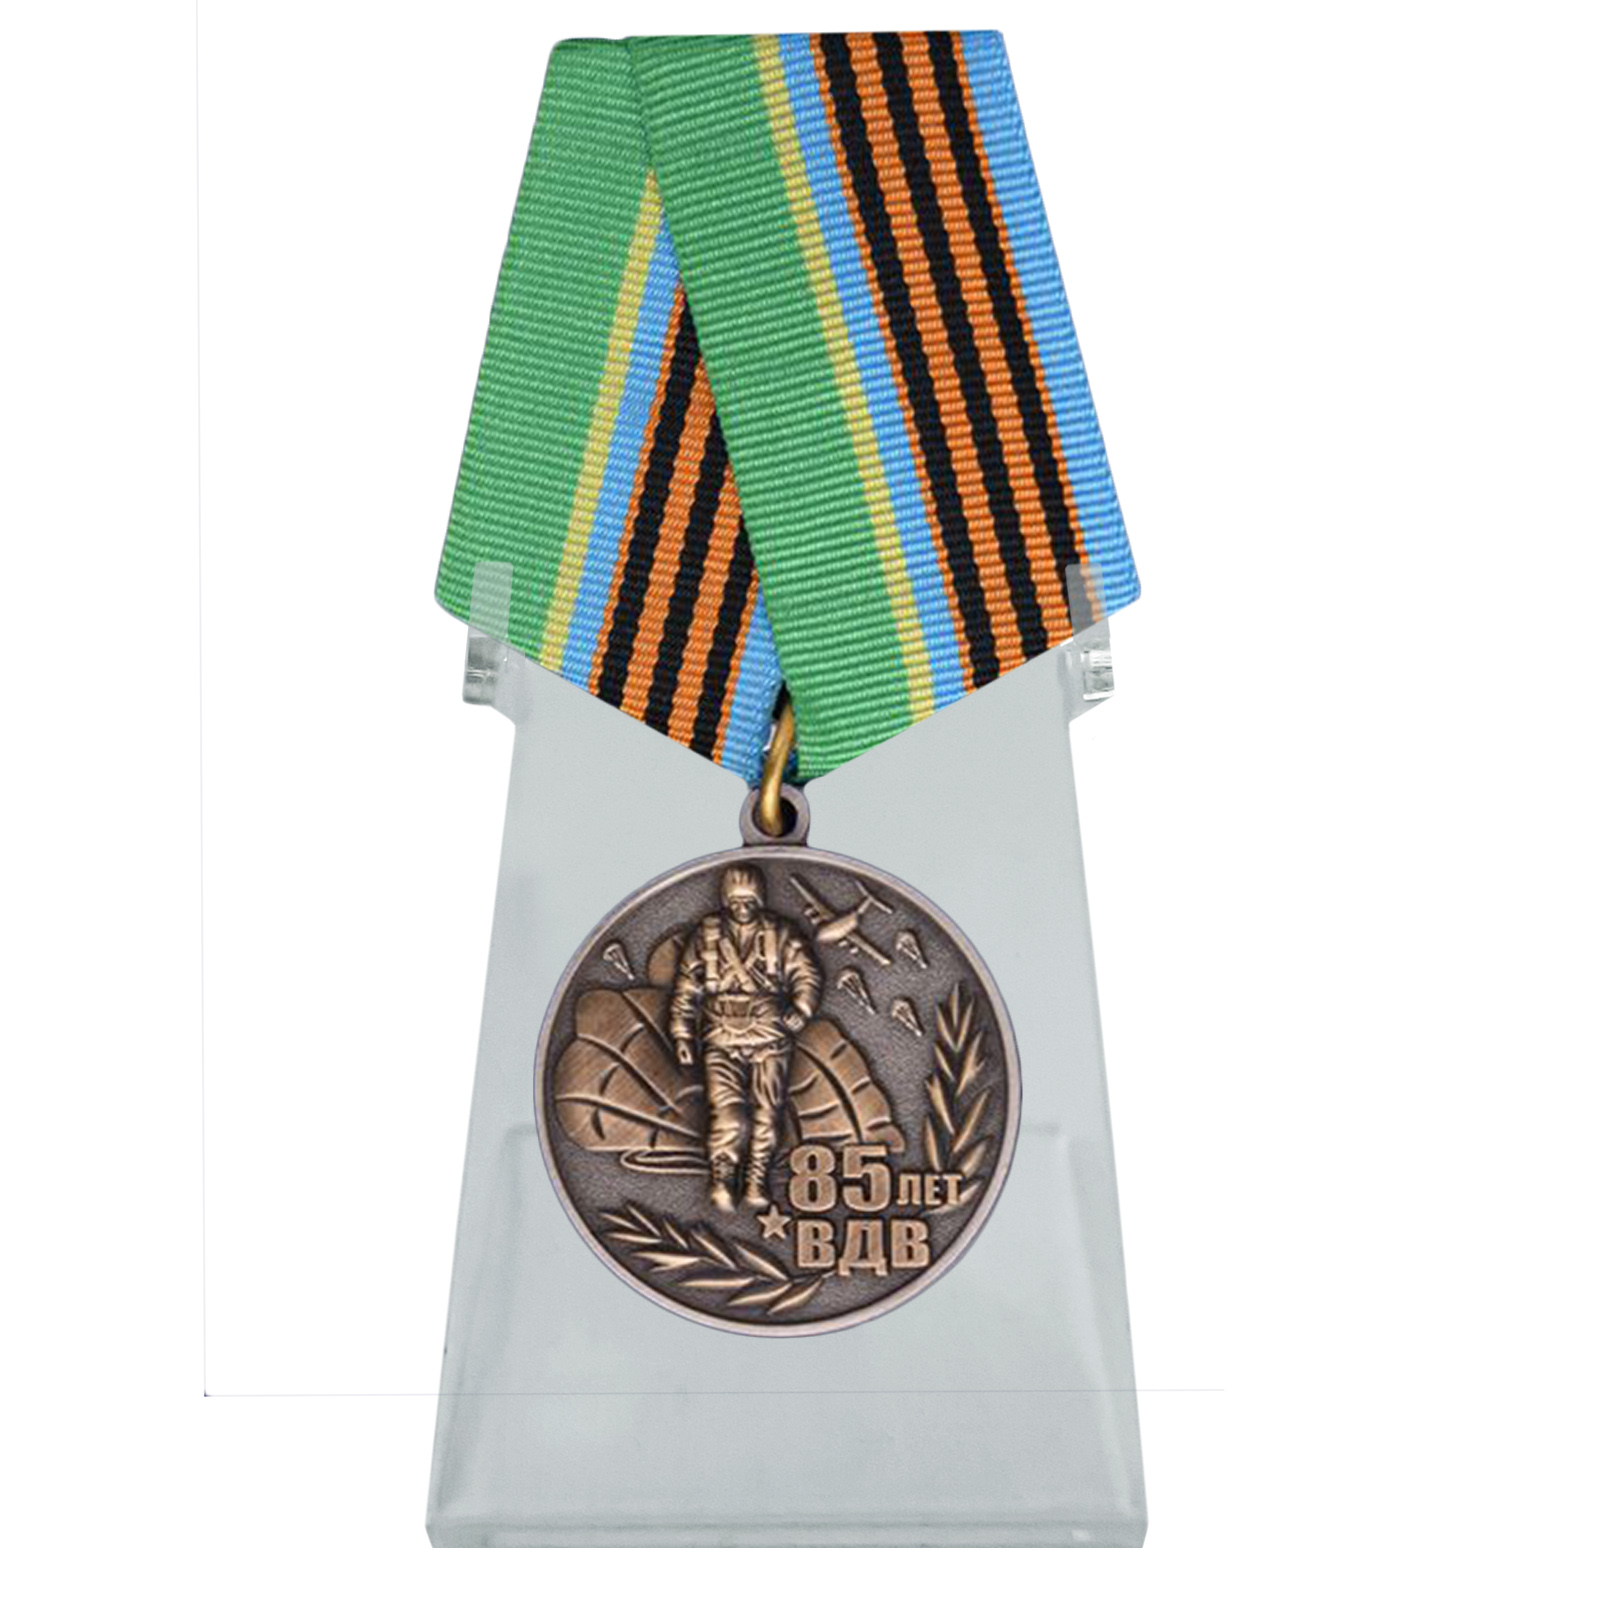 Купить медаль ВДВ на колодке на подставке по специальной цене